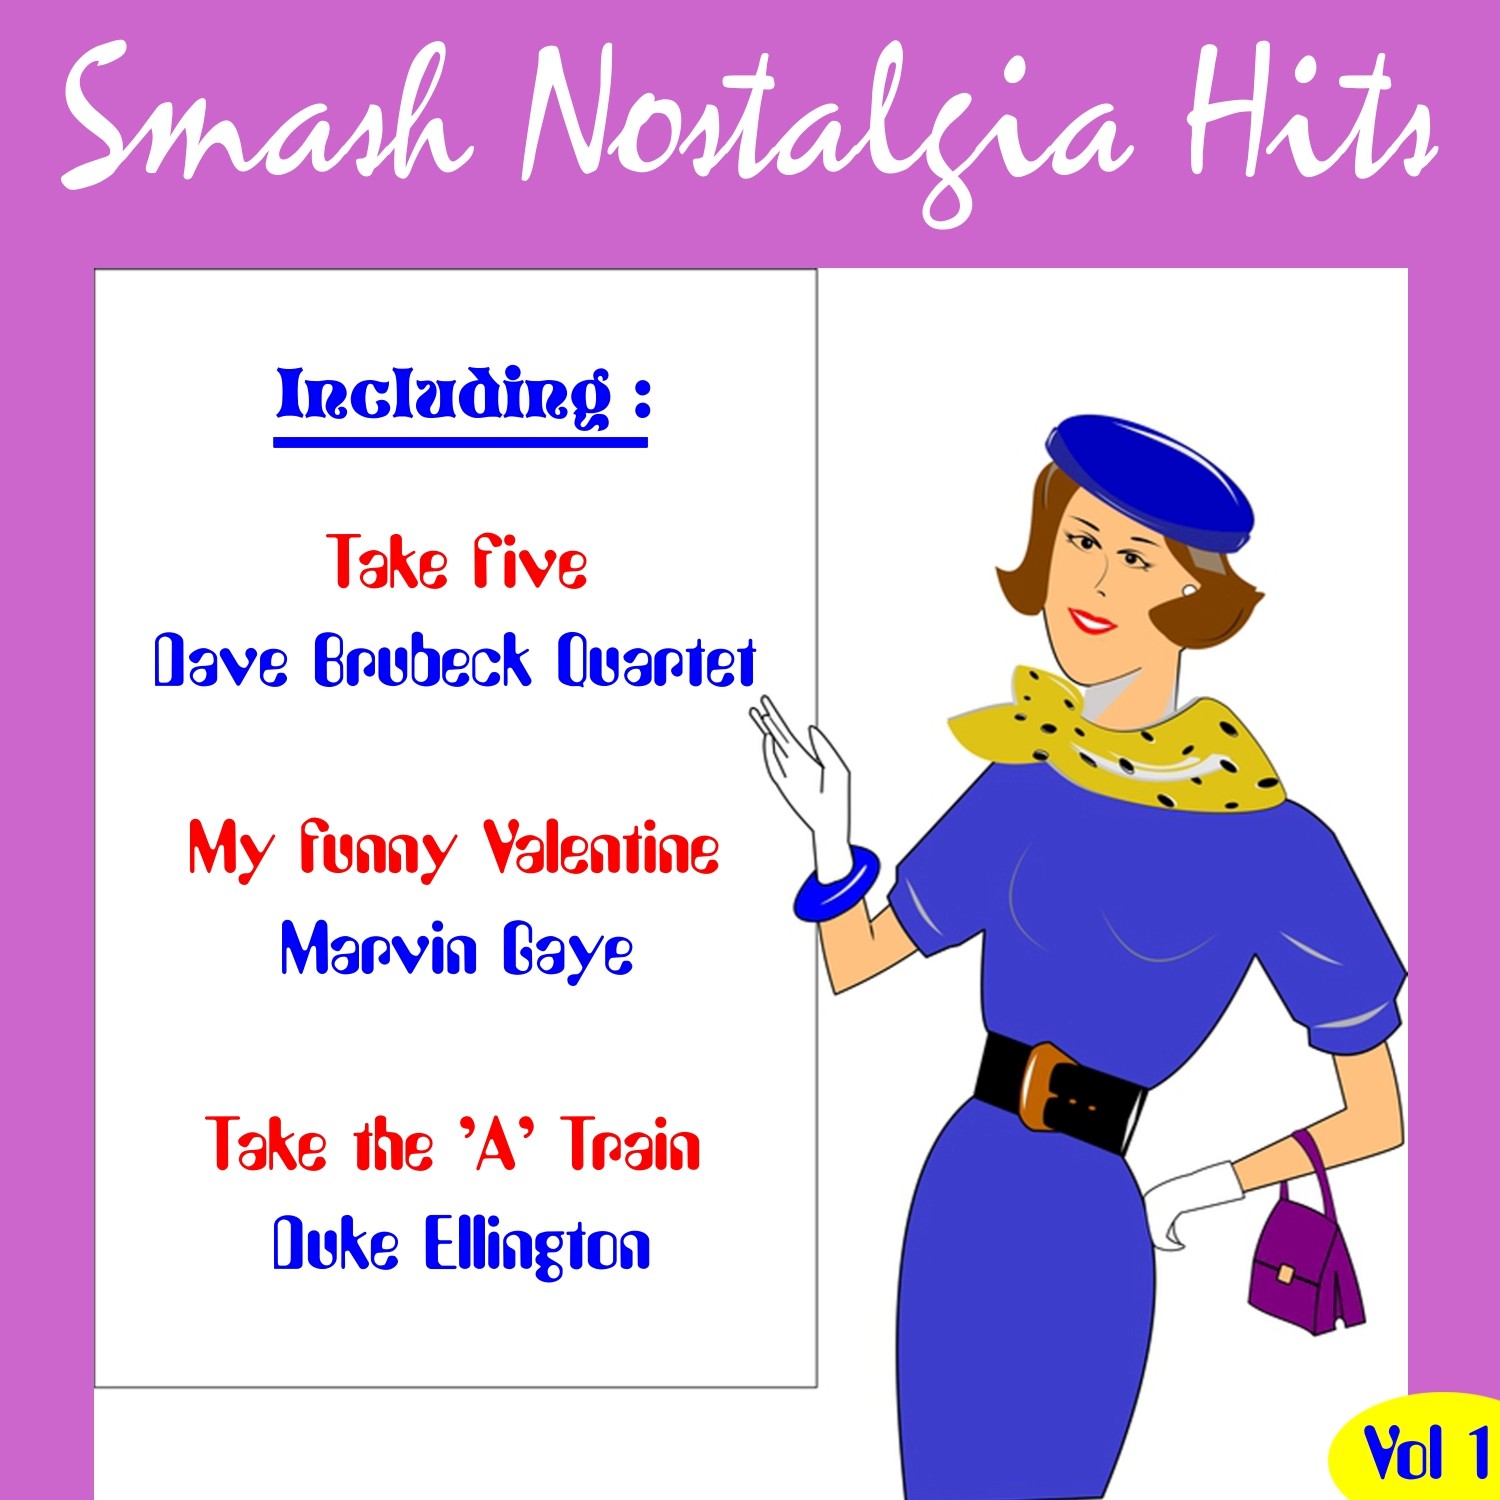 Smash Nostalgia Hits, Vol. 1